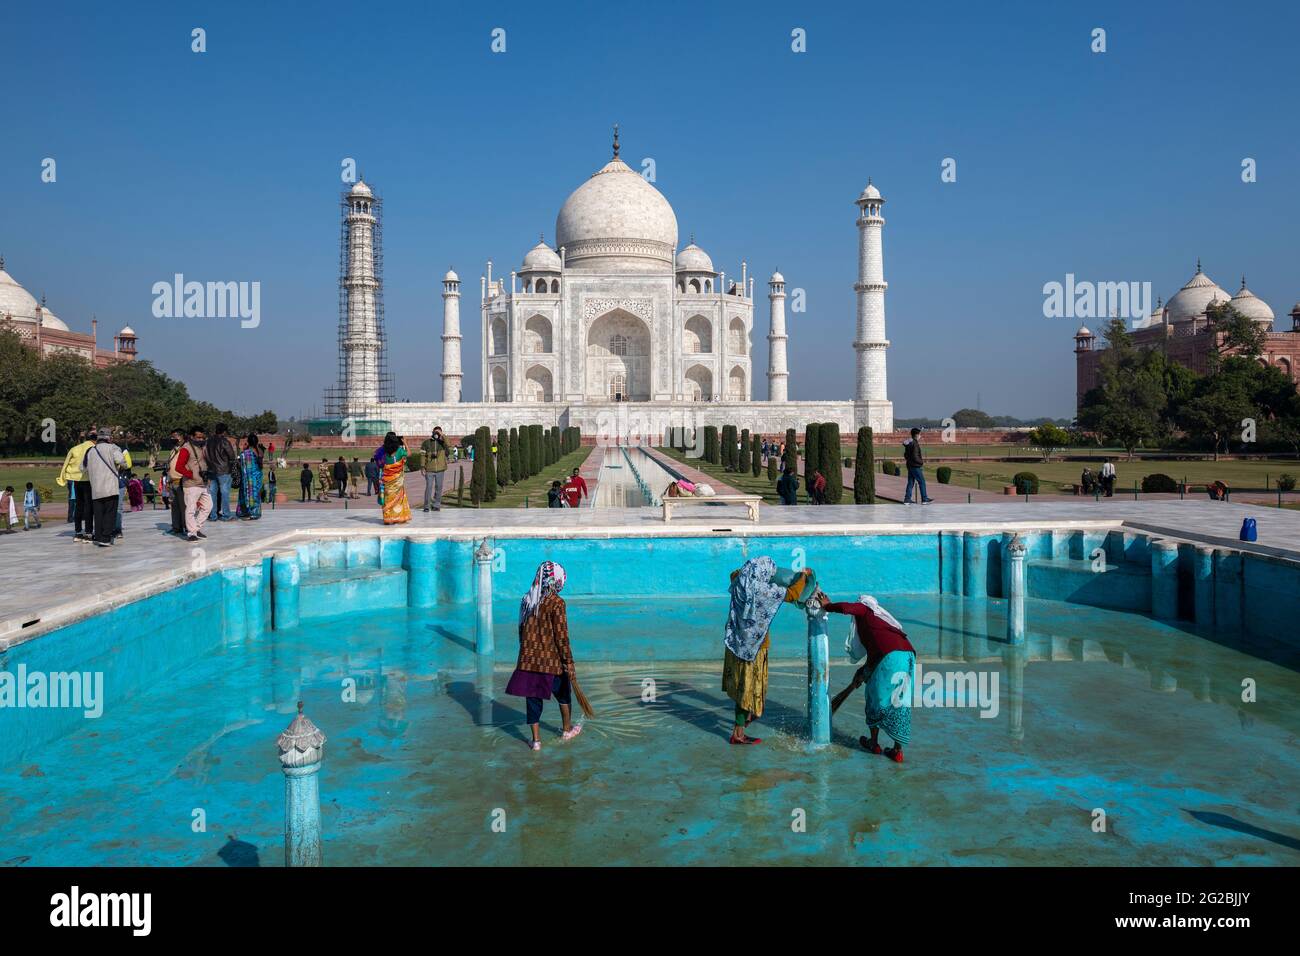 Les travailleuses en cours de nettoyage de l'une des piscines du complexe Taj Mahal comme monument ouvert au public après la première vague Covid-19 en Inde. Banque D'Images